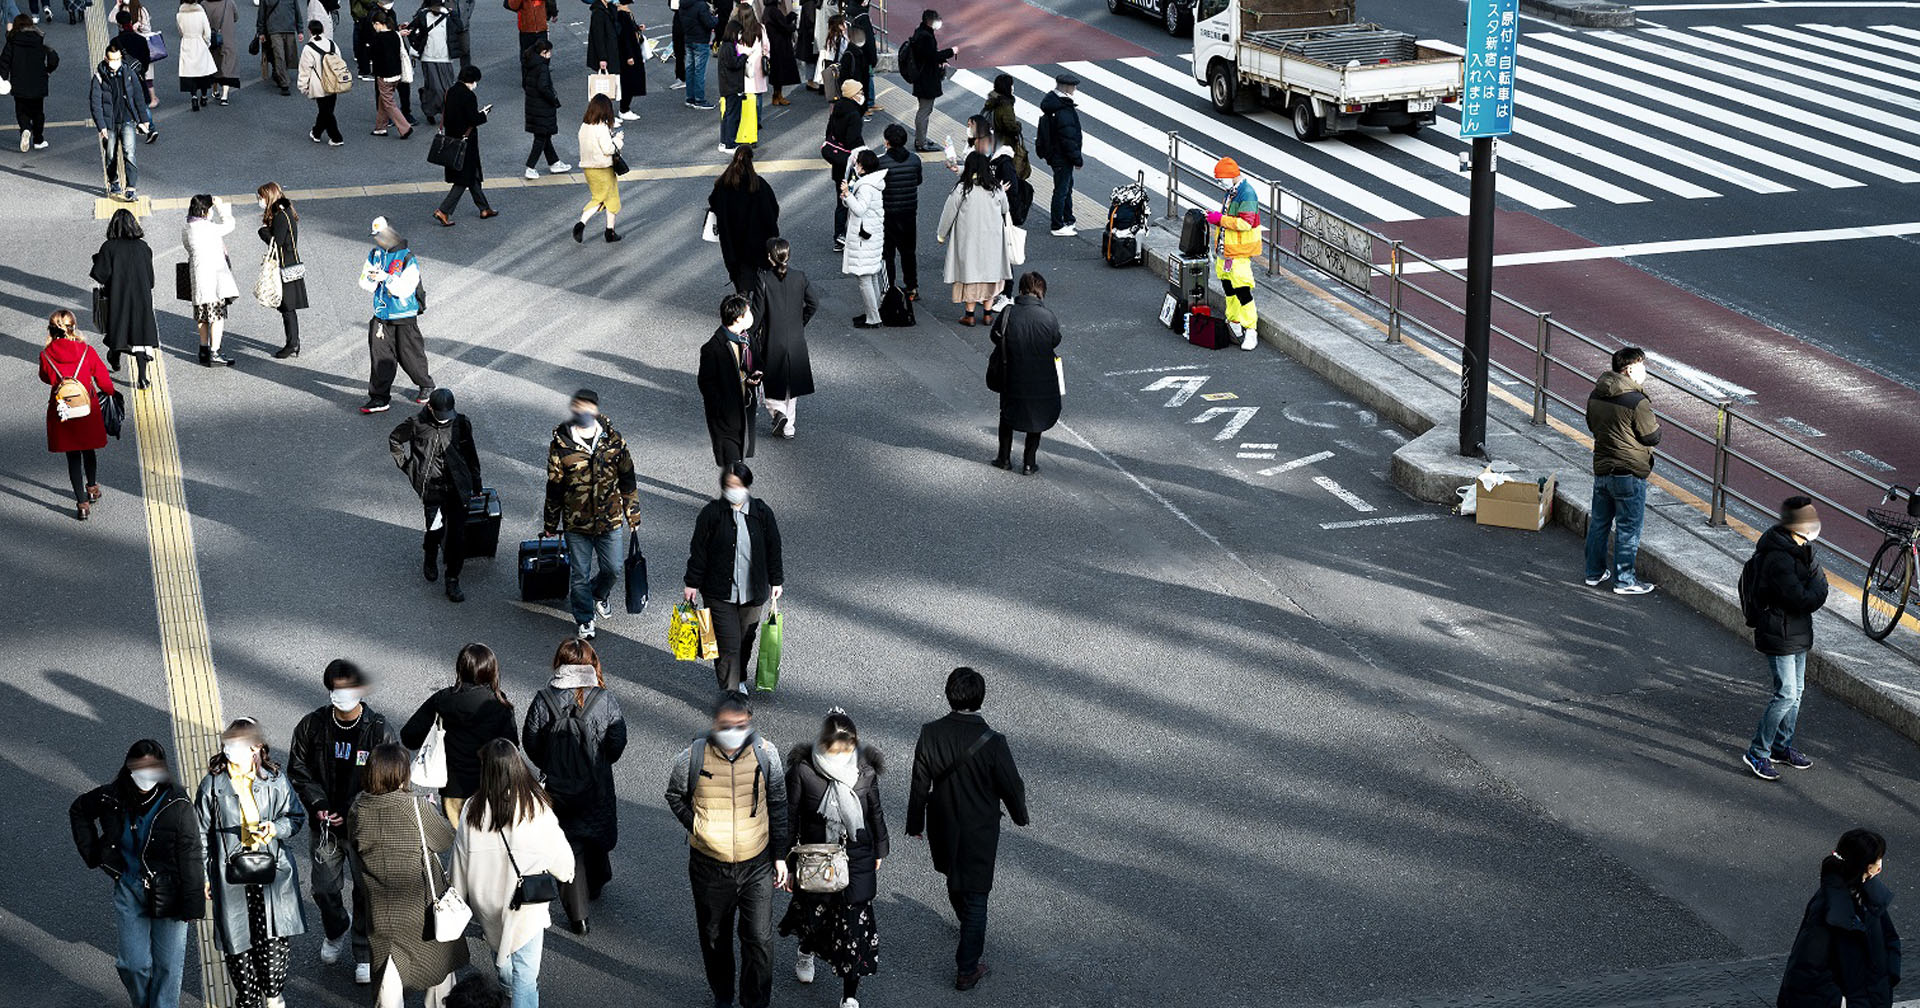 ไทยลีฟ เปิดตลาดสินค้า CBD ญี่ปุ่น ชี้ดีมานด์วัยรุ่นญี่ปุ่นเพิ่มสูงจากภาวะเครียด-โควิด